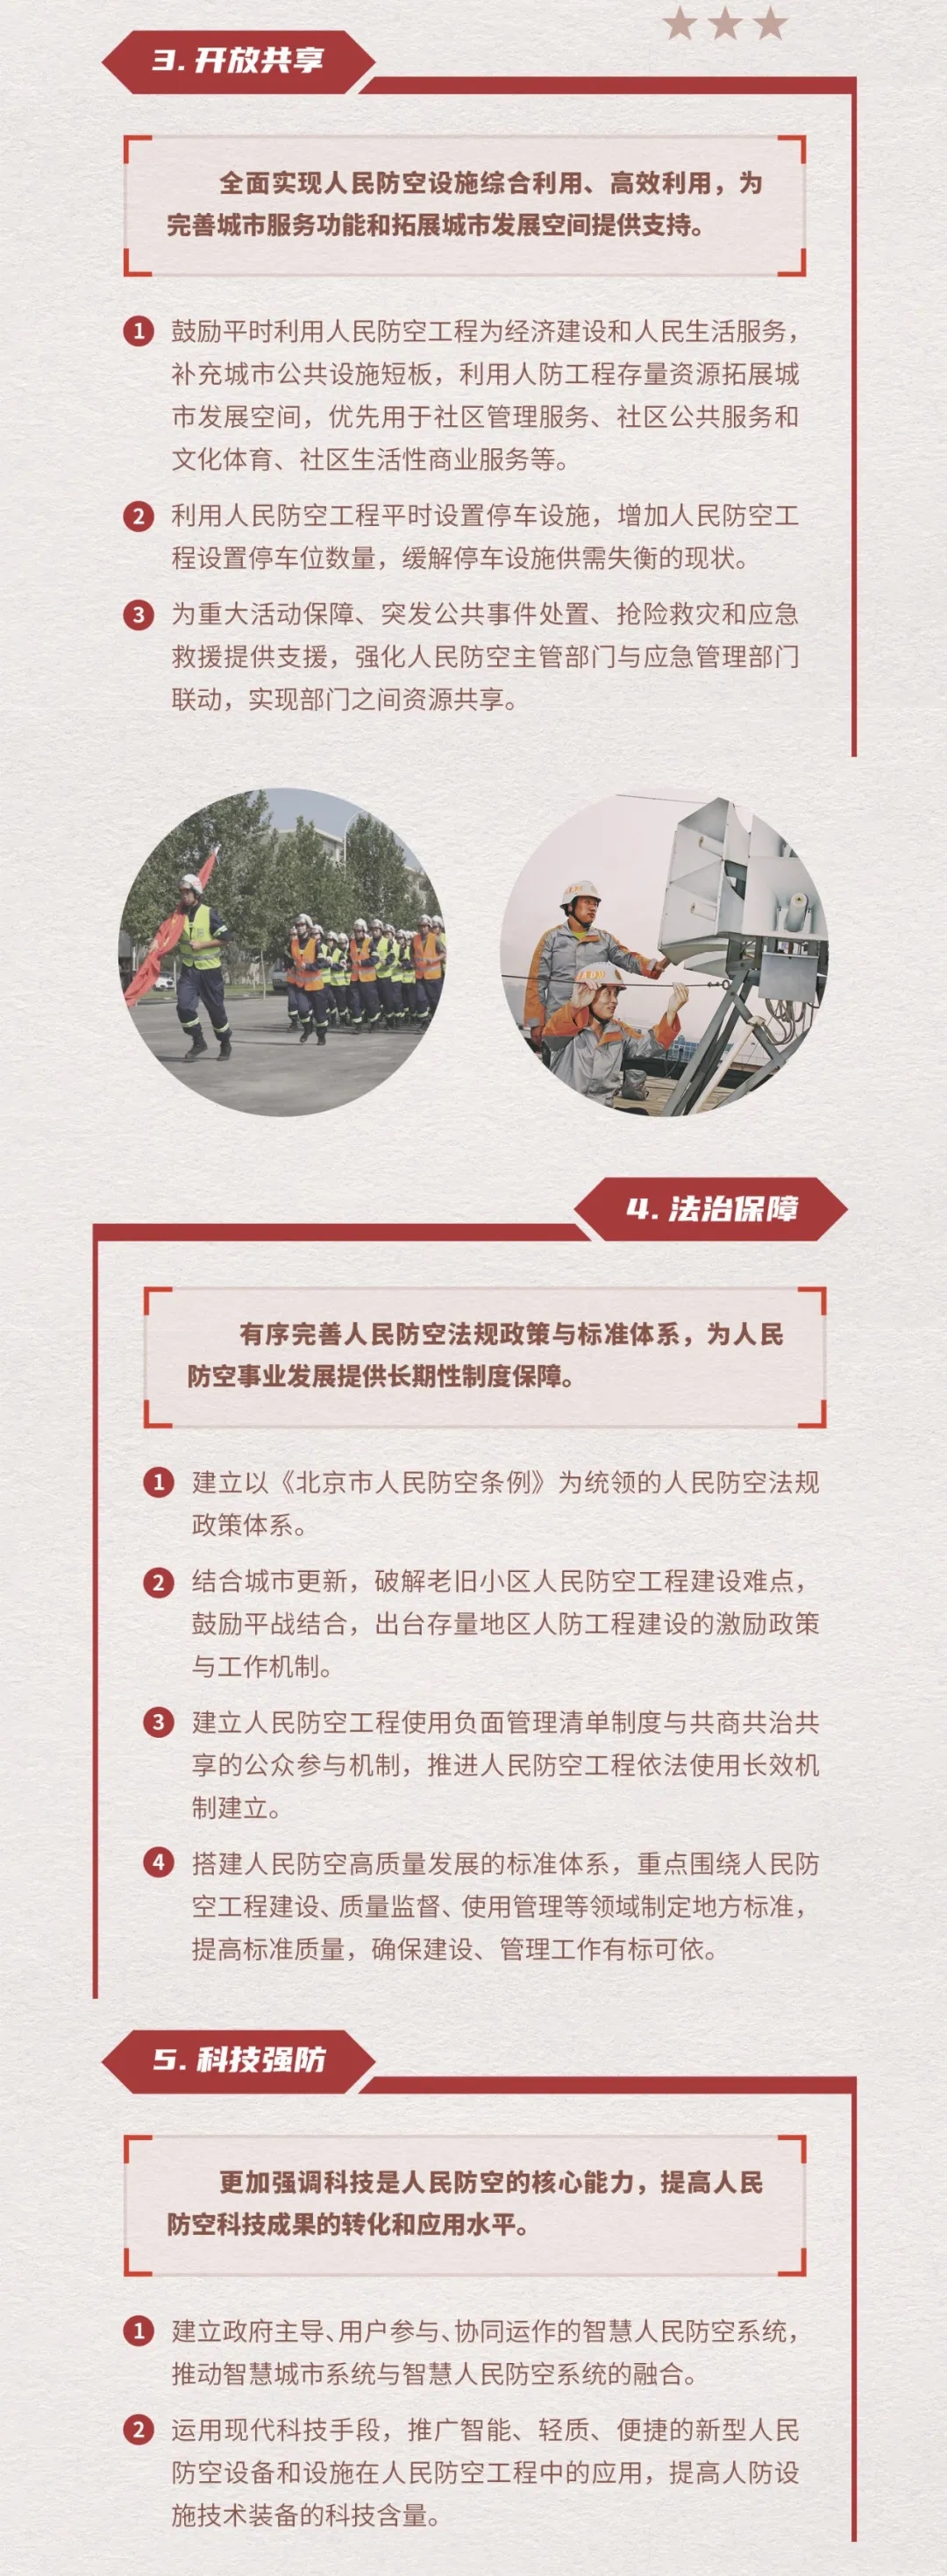 一张图读懂《北京人民防空建设规划(2018年-2035年)》